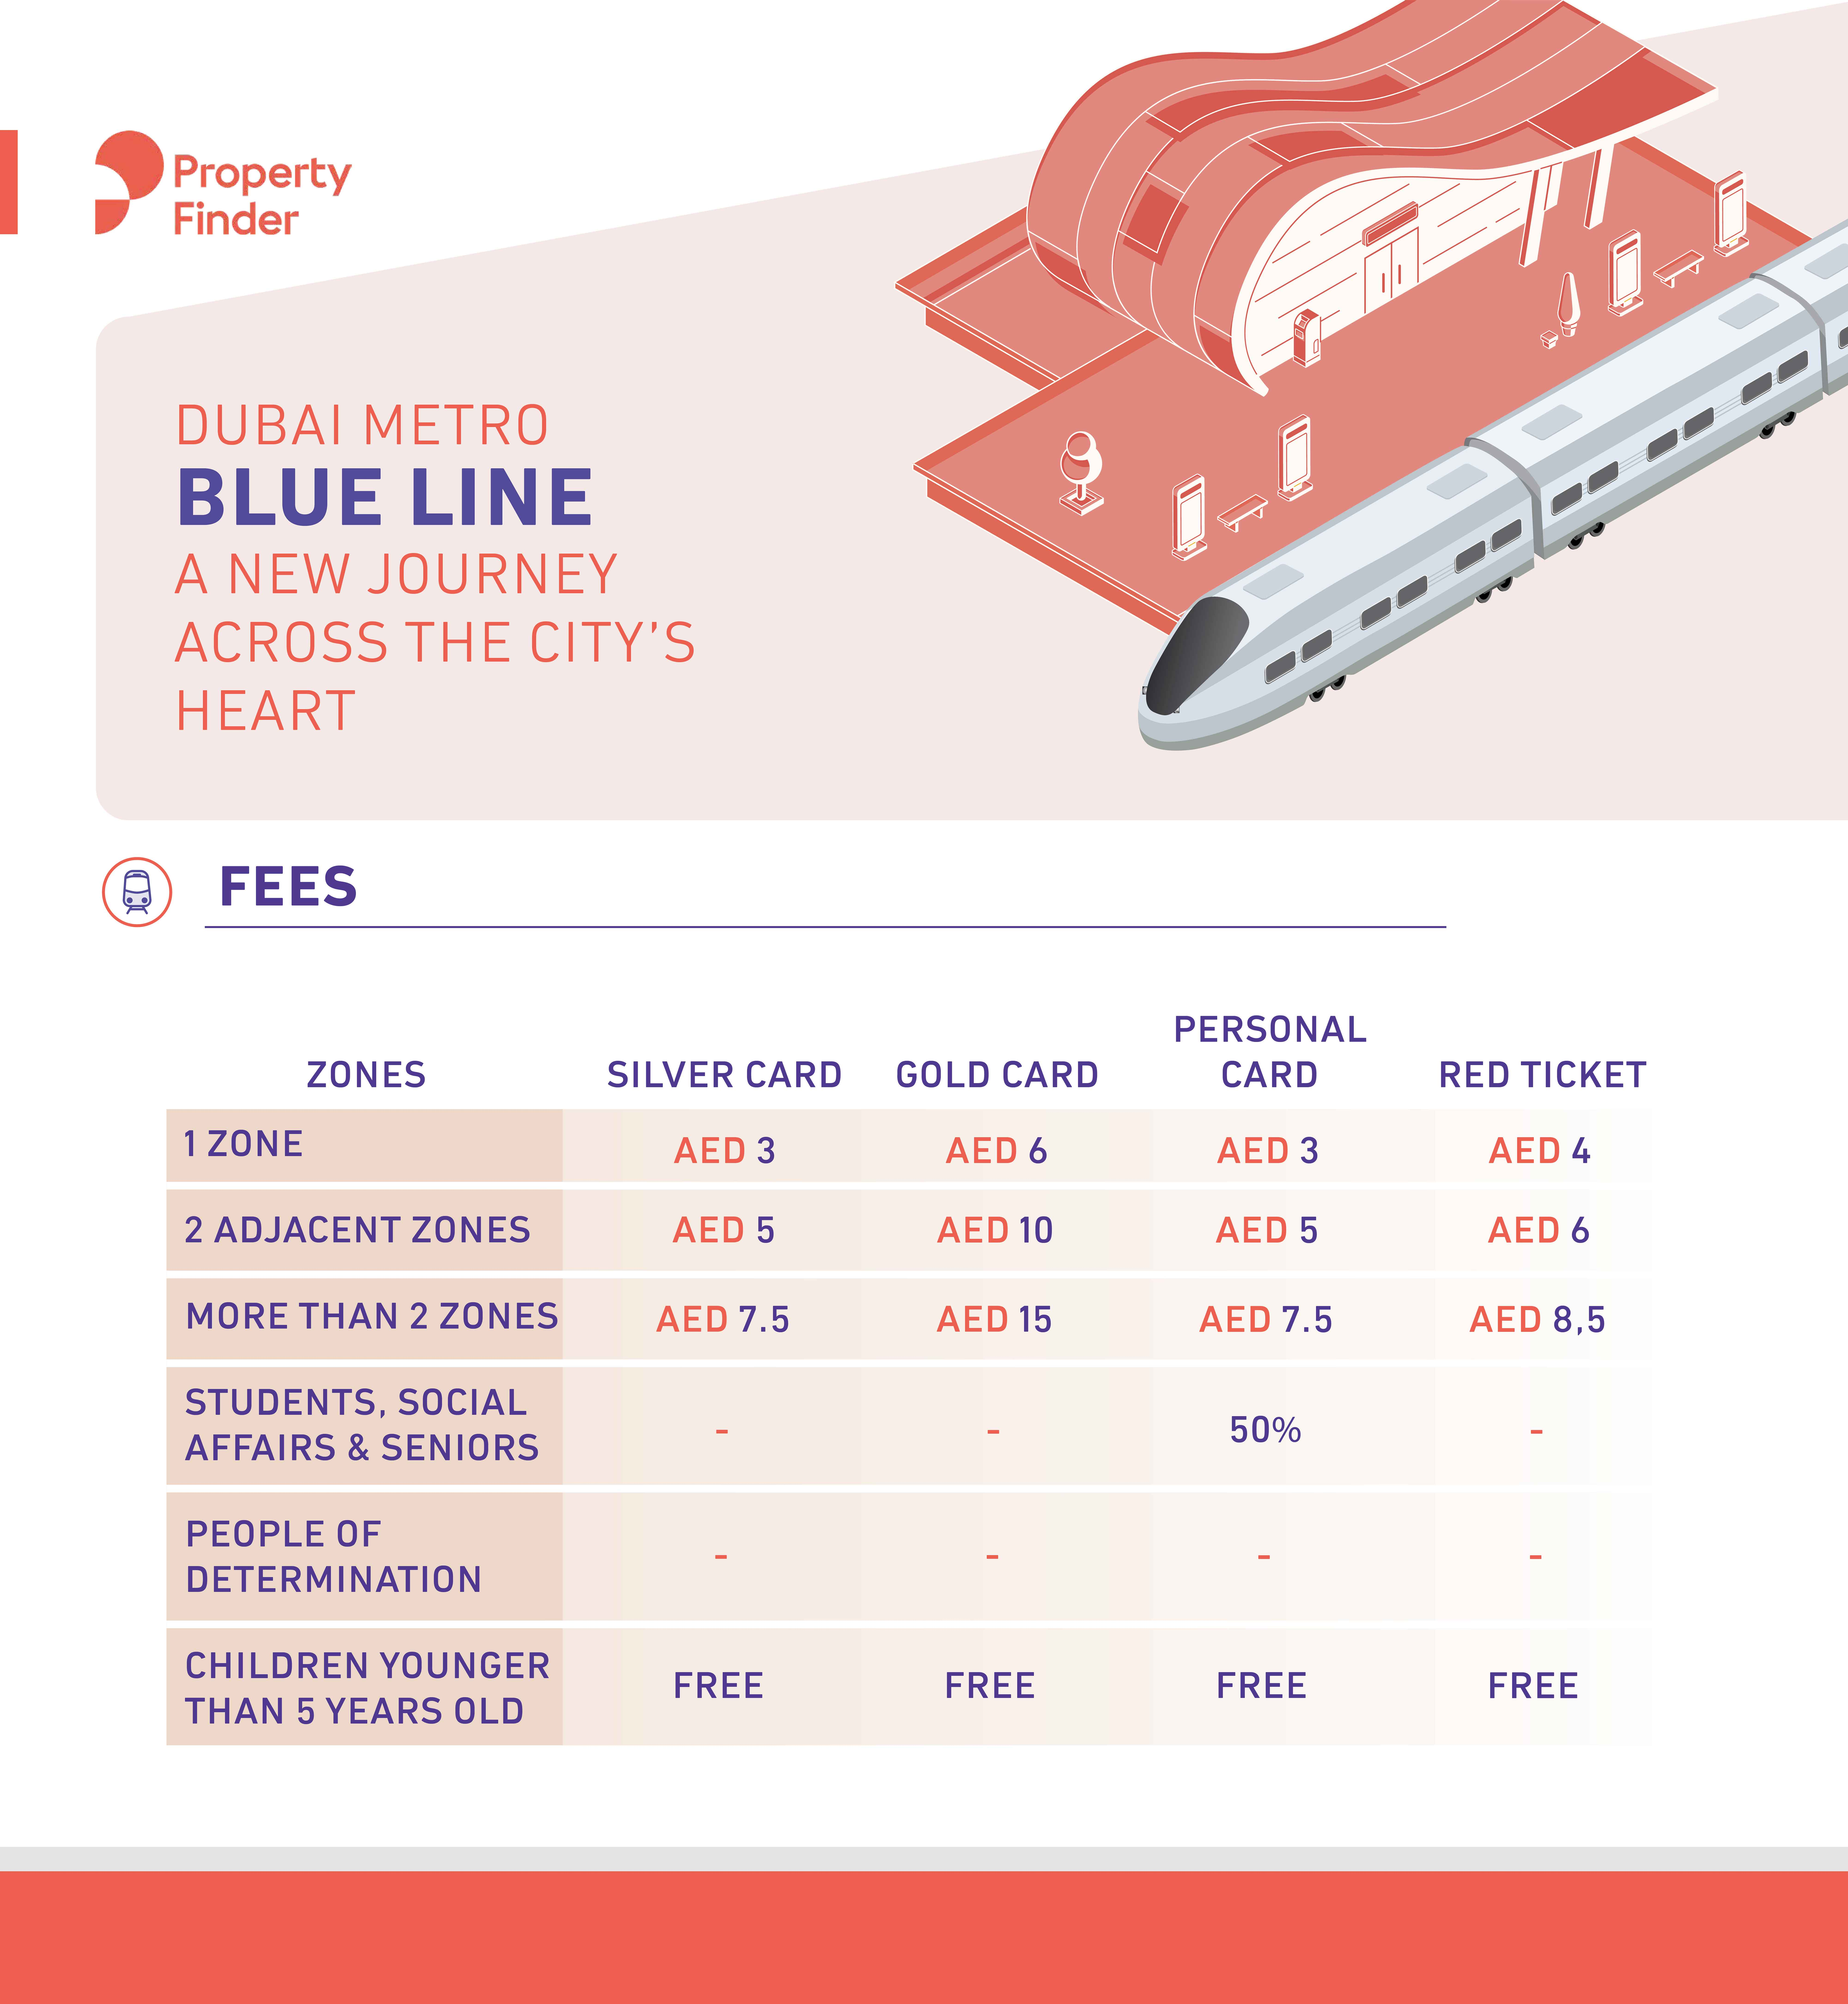 Blue Line Metro fees